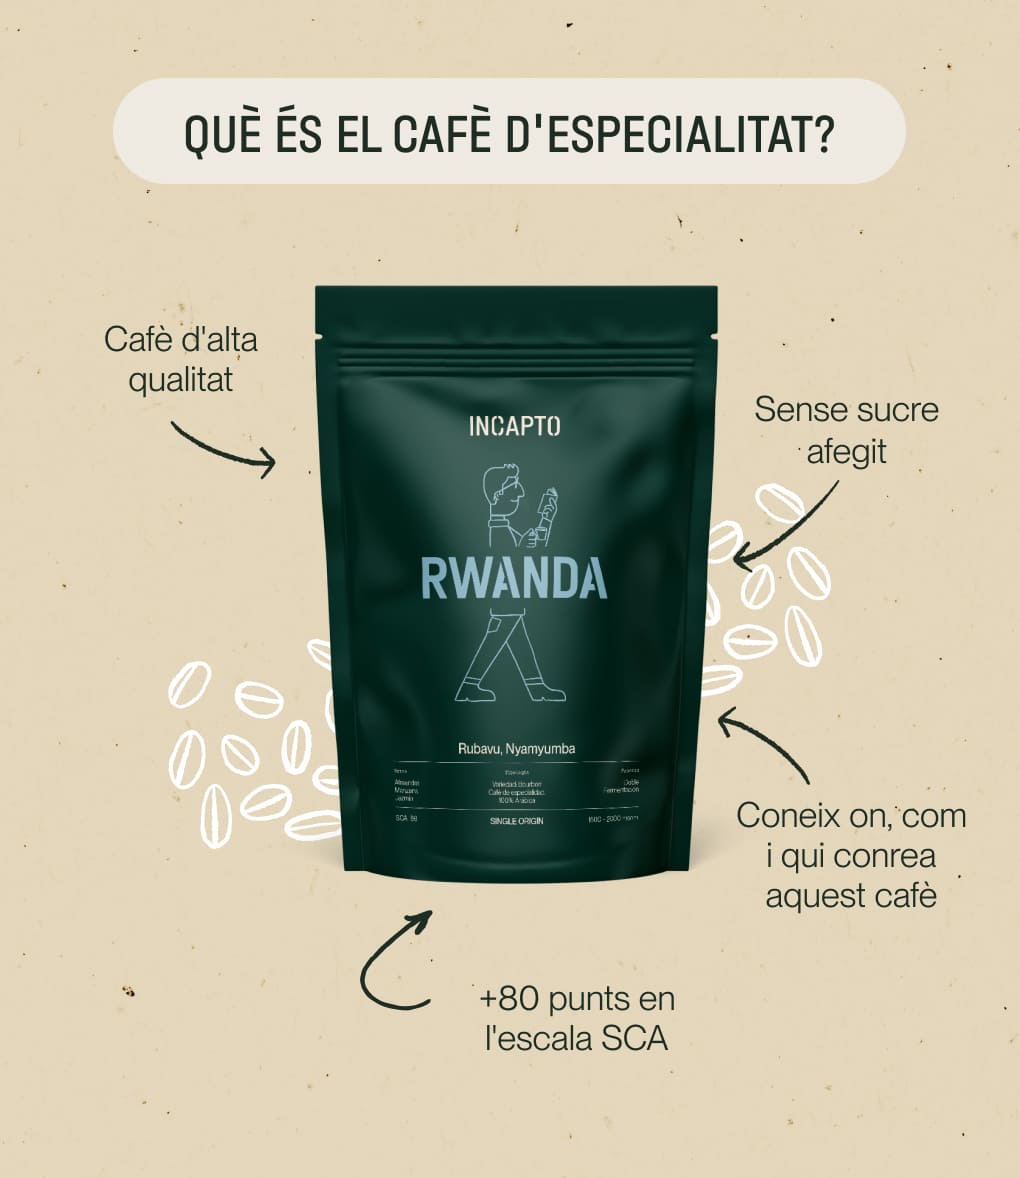 Característiques del cafè d'especialitat d'origen Rwanda